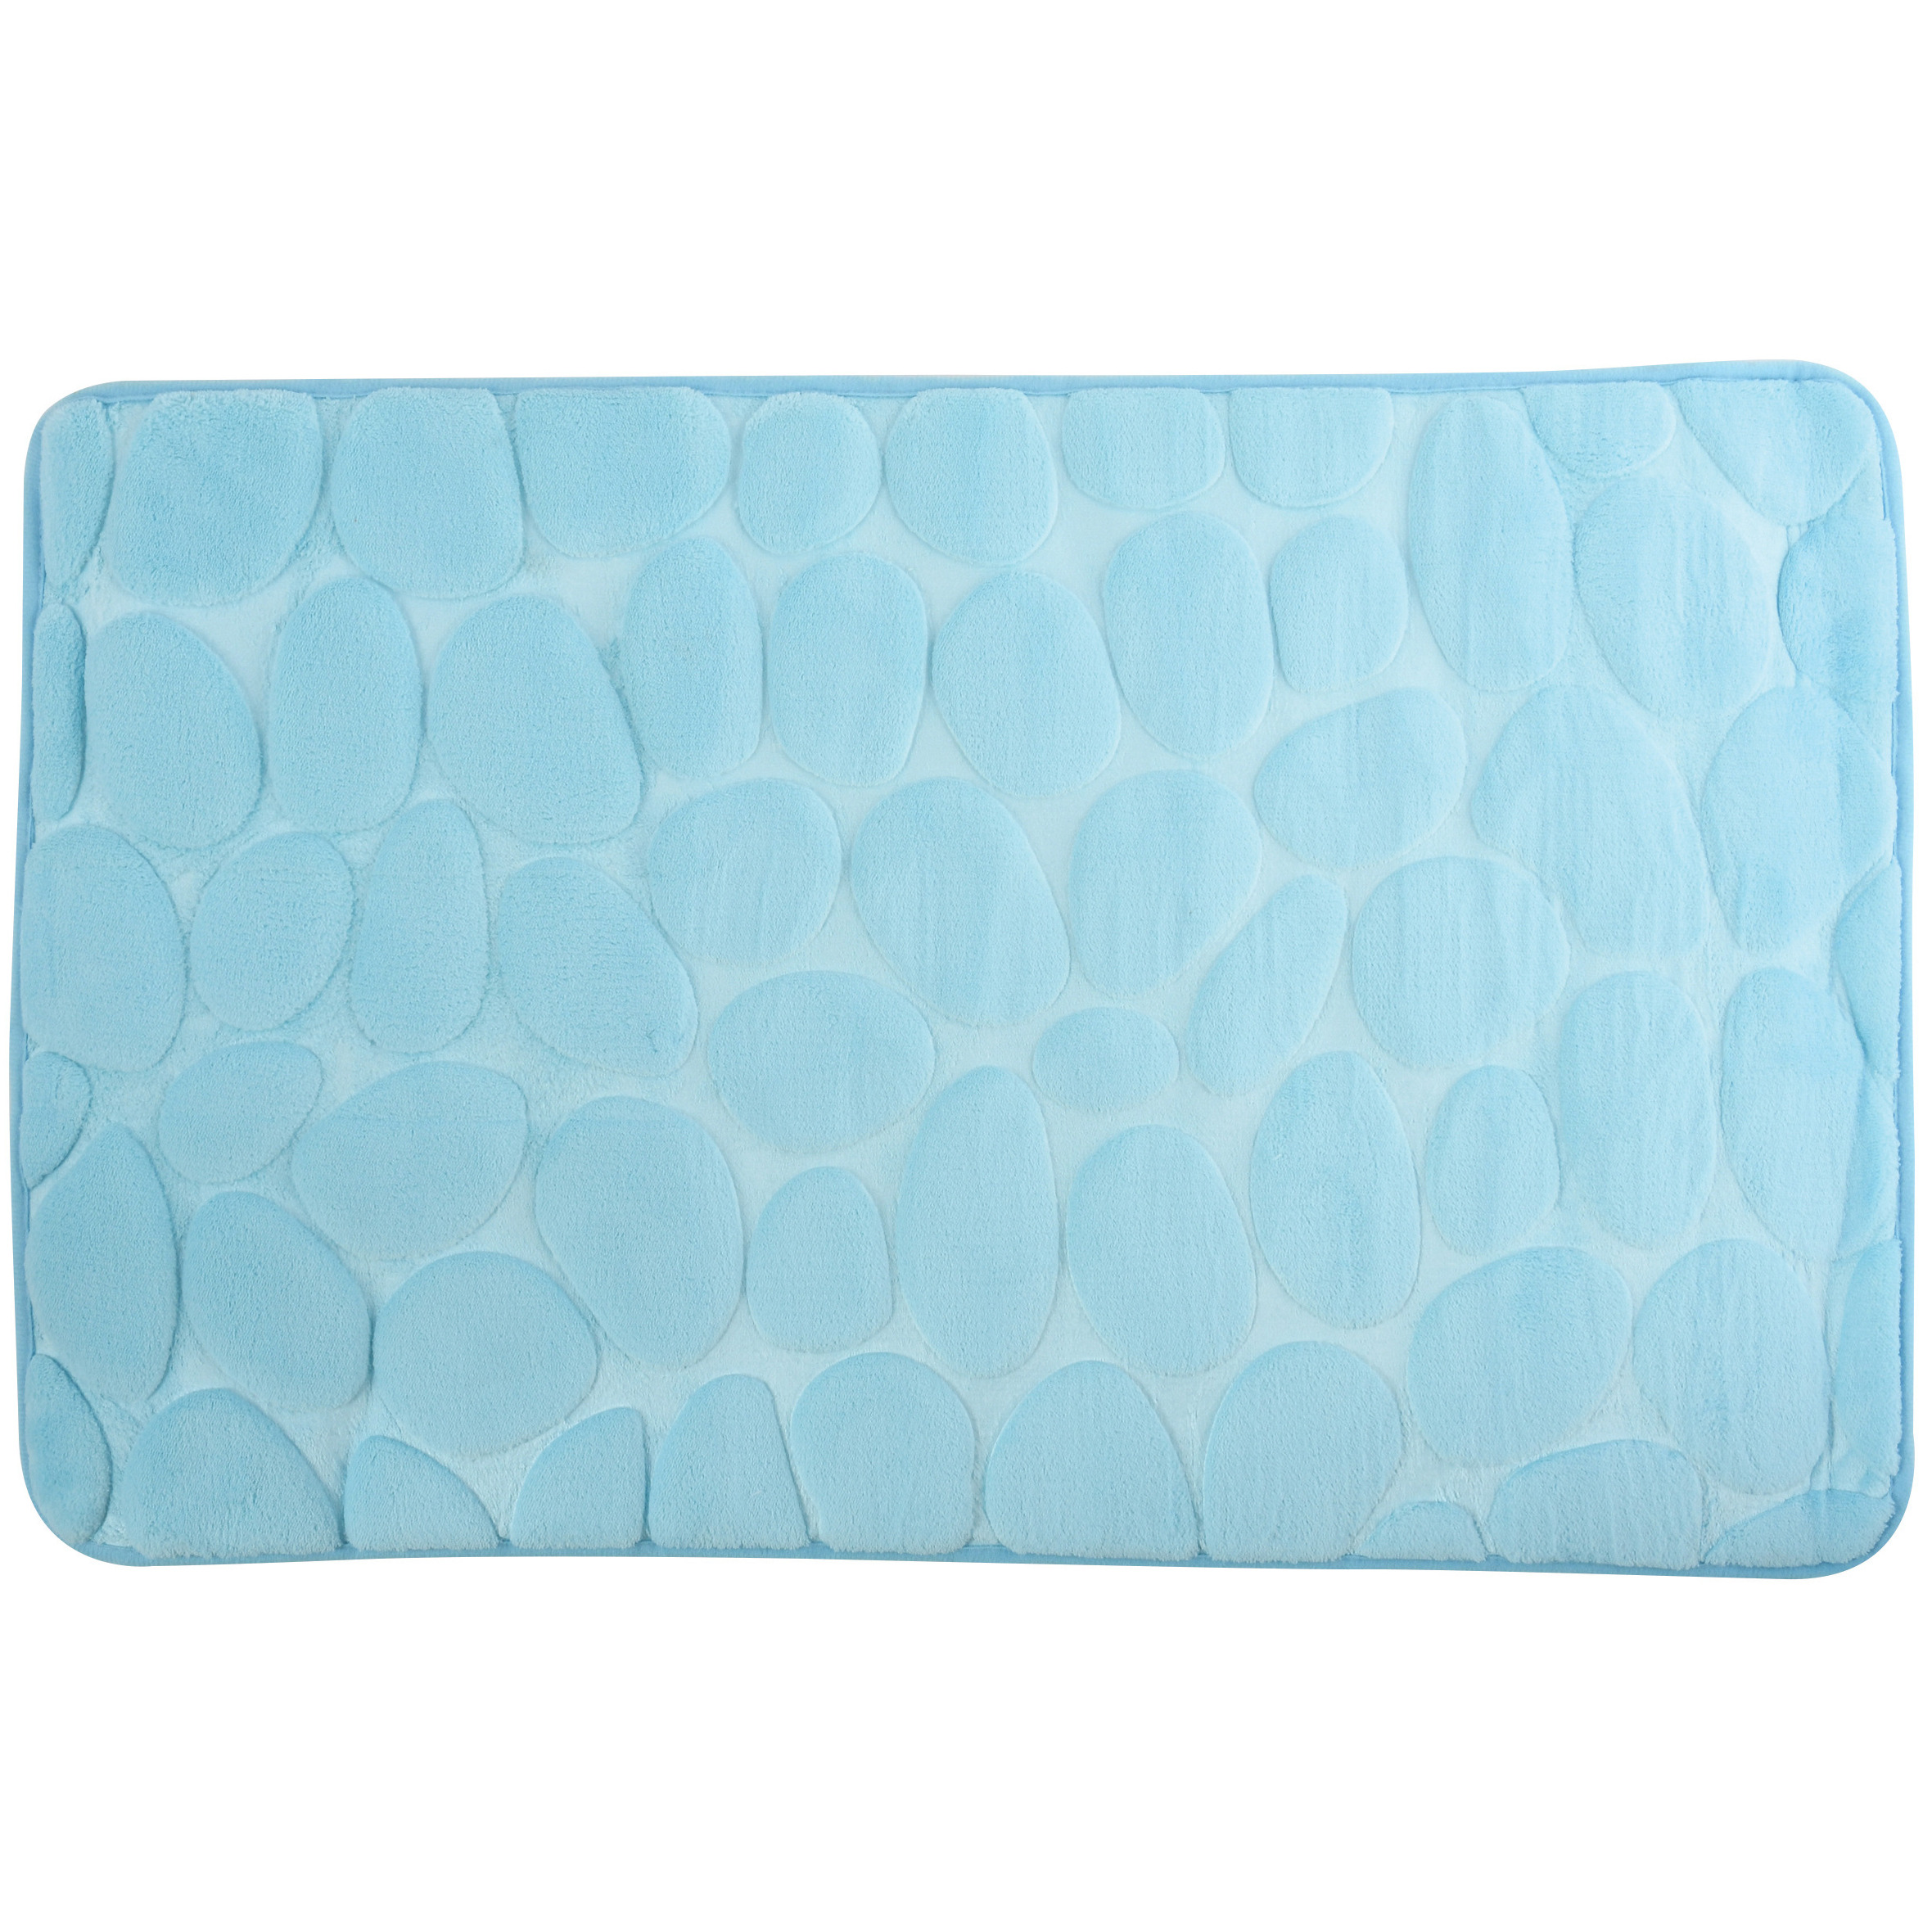 Badkamerkleedje-badmat tapijt kiezel motief vloermat lichtblauw 50 x 80 cm laagpolig